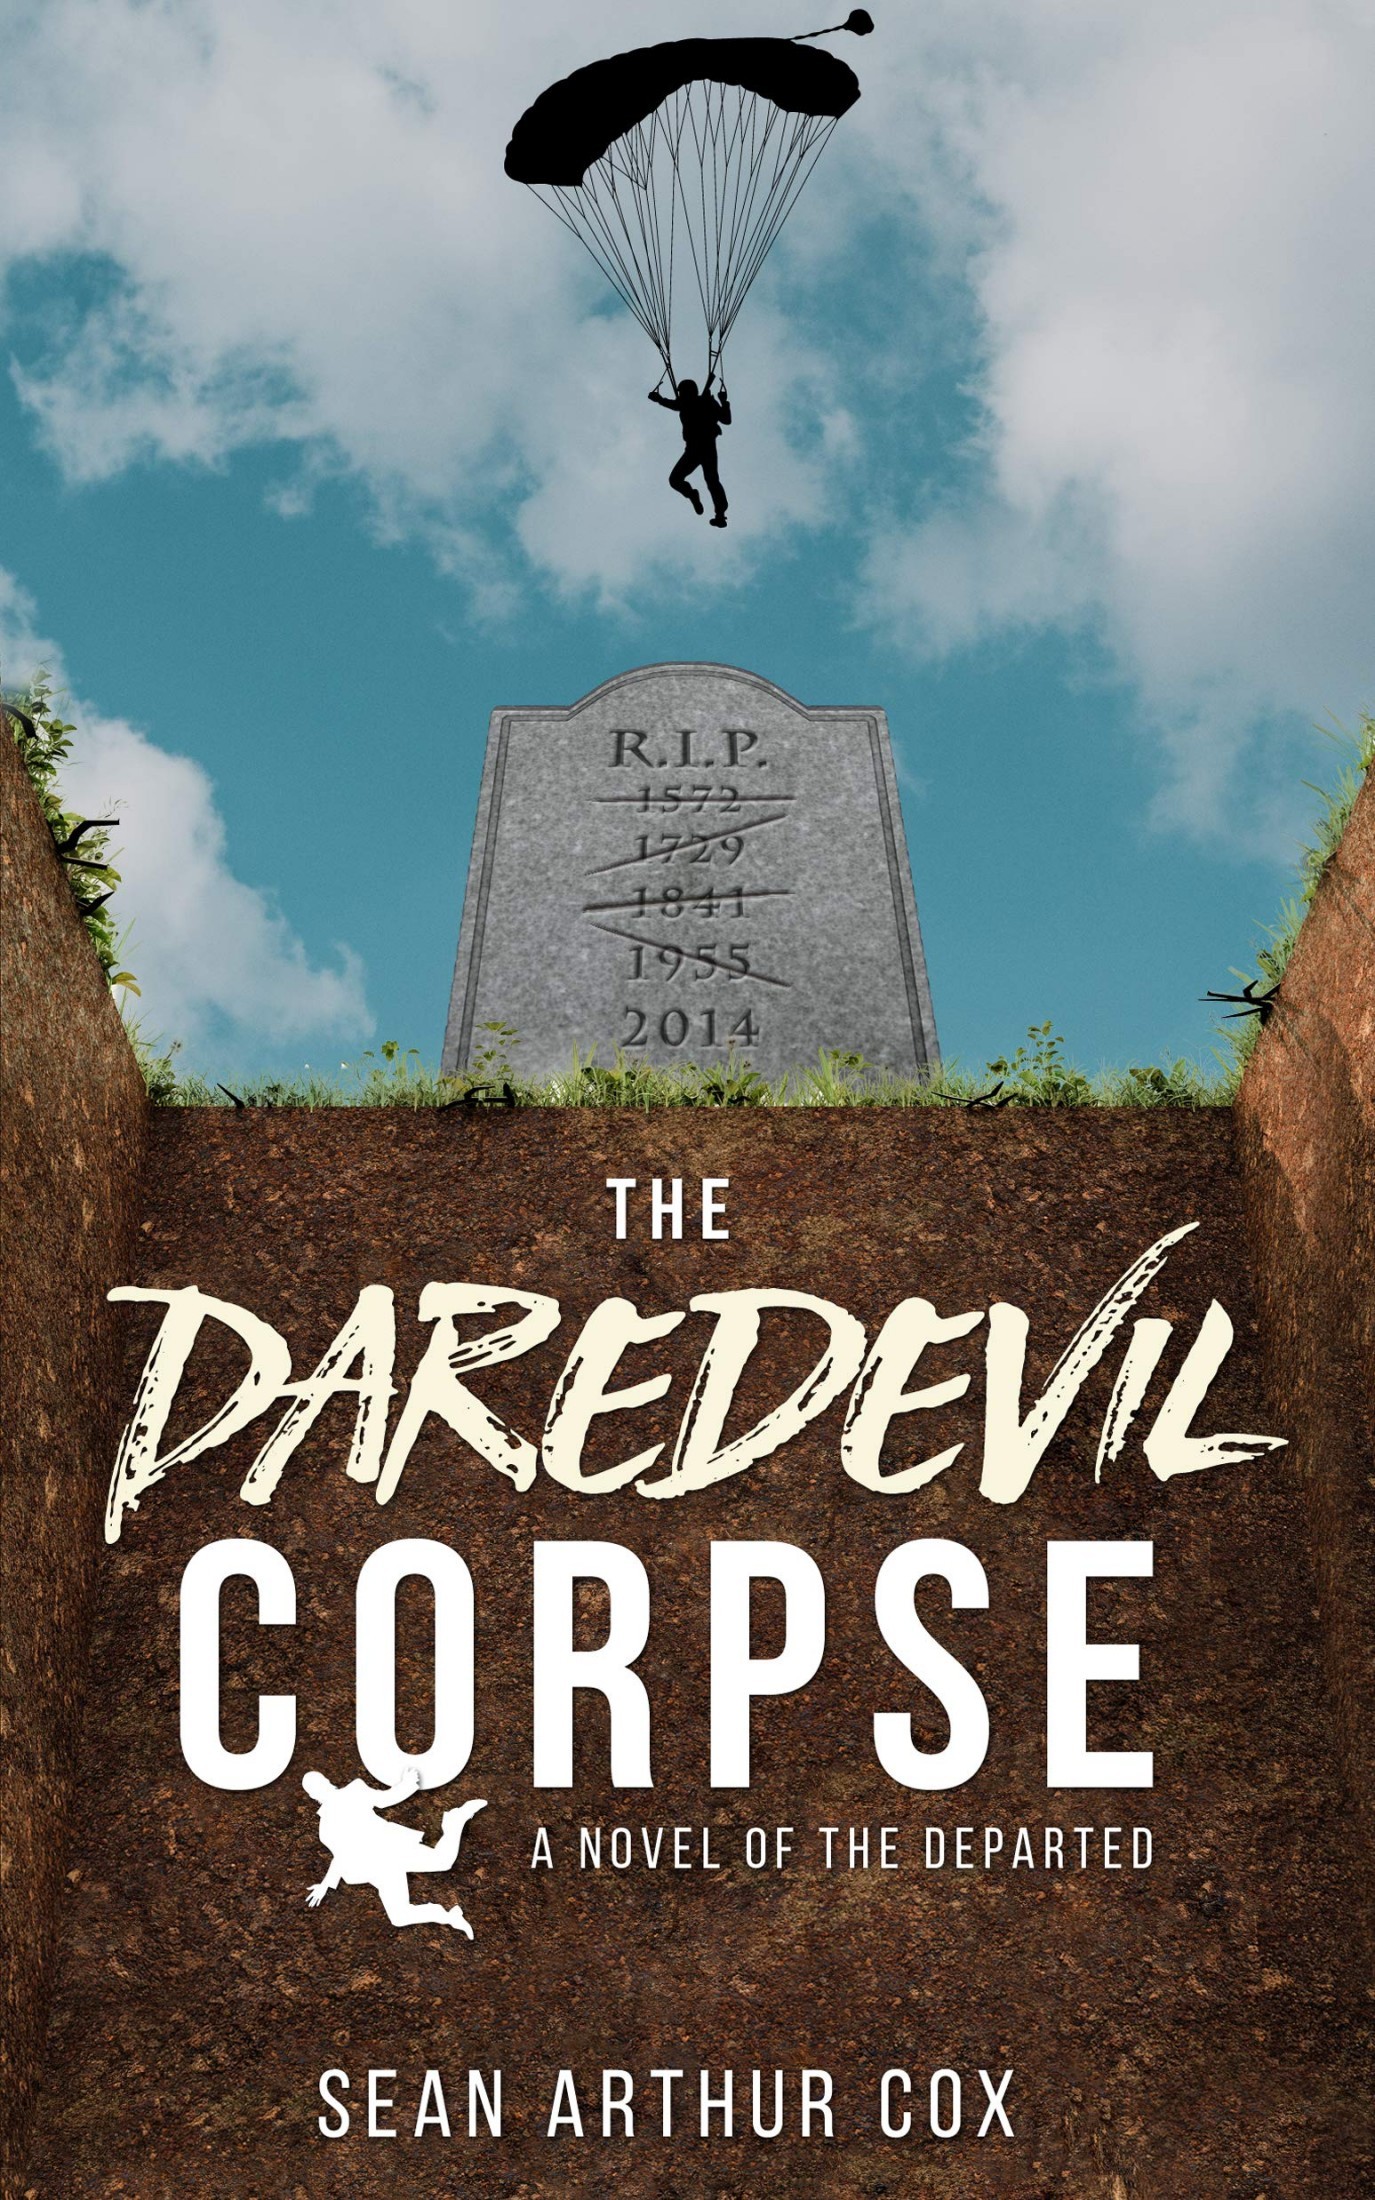 The Daredevil Corpse